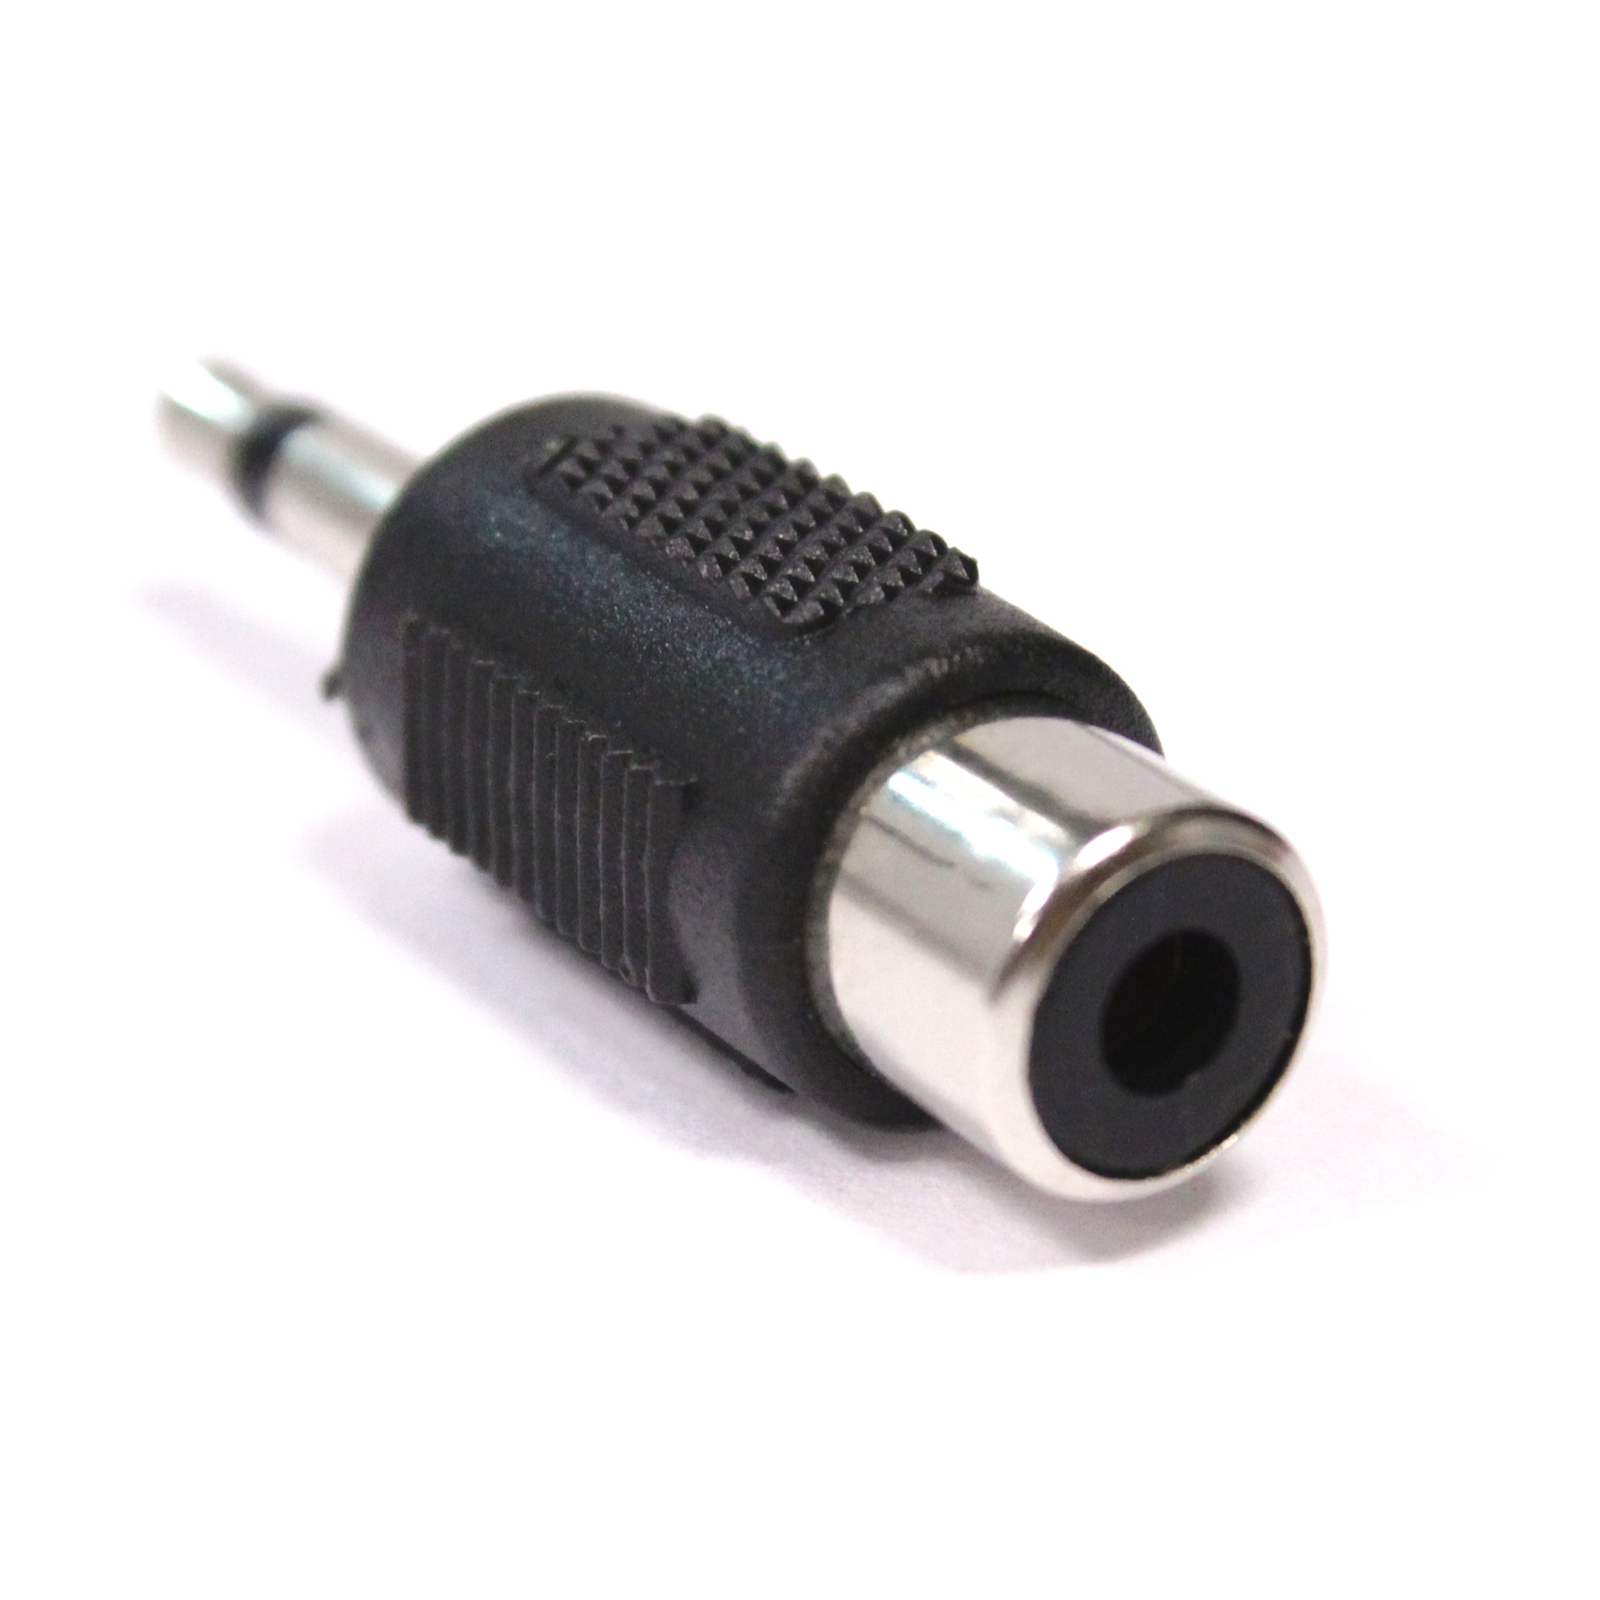 Cable Jack de 3,5mm a 3RCA, conector macho de 3,5mm a 3 RCA macho, div